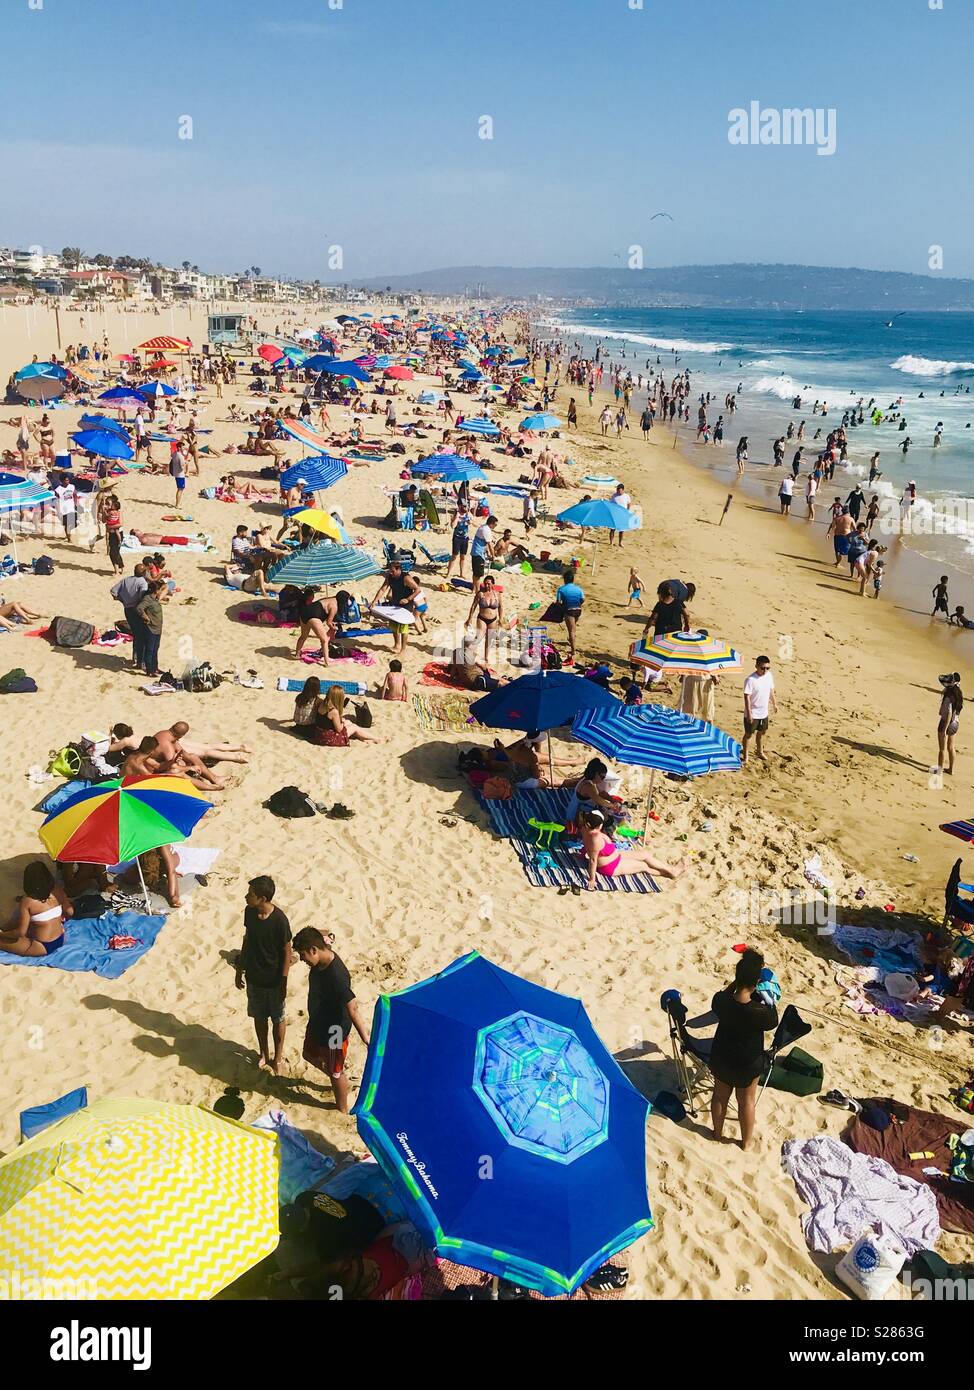 Un molto affollata spiaggia su un caldo giorno d'estate. Manhattan Beach, California USA. Foto Stock